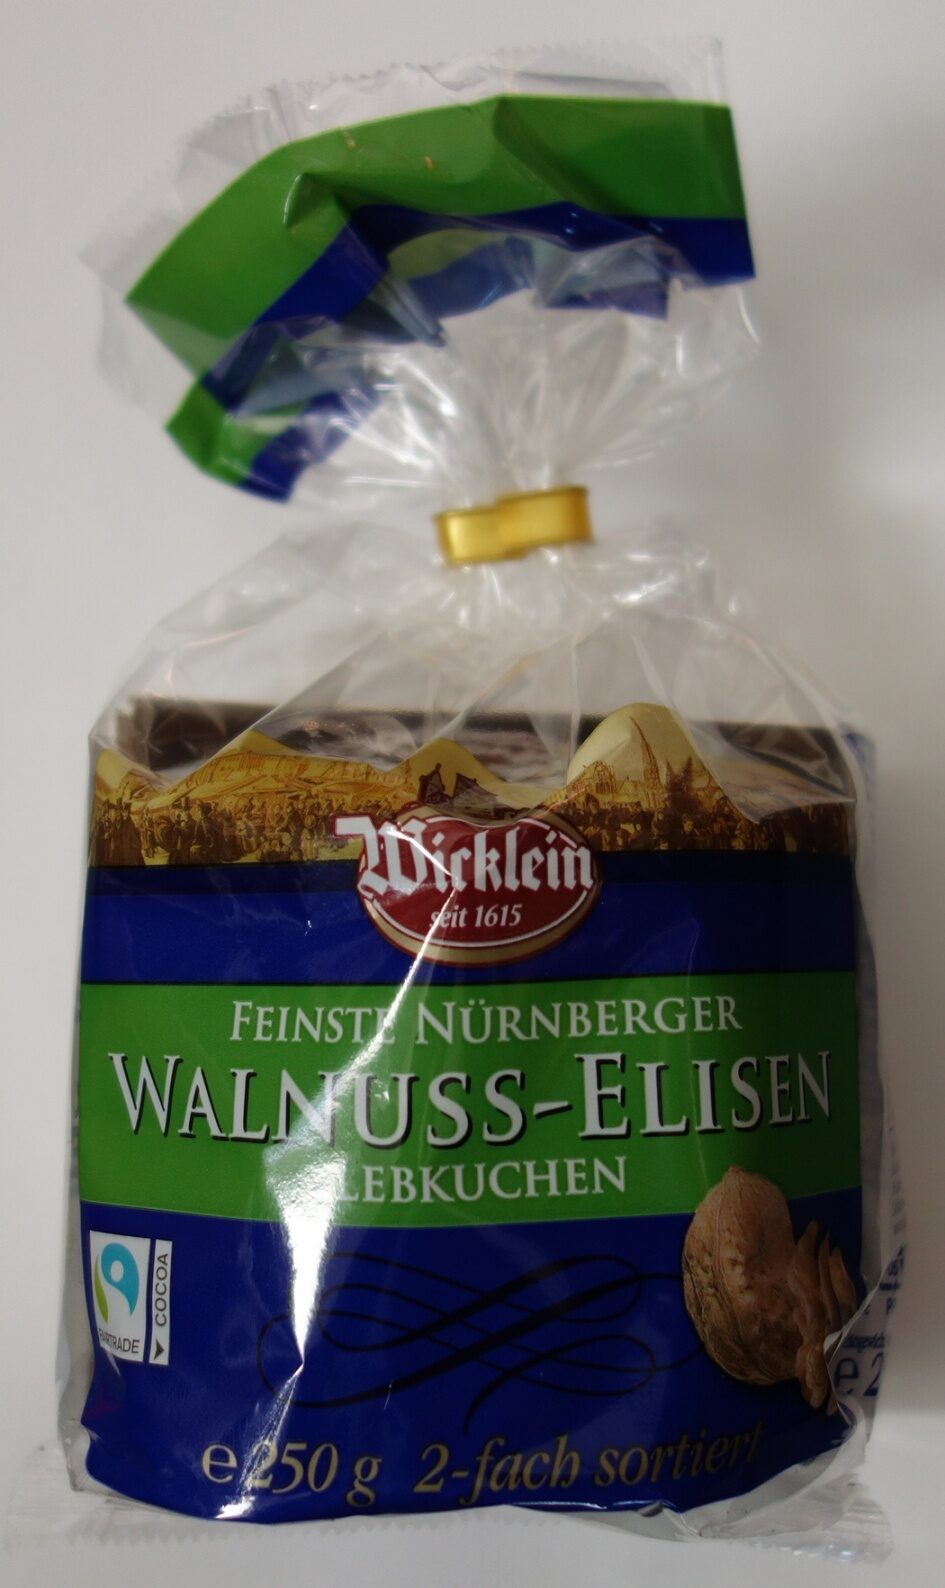 Feinste Nürnberger Walnuss-Elisen Lebkuchen - Product - de